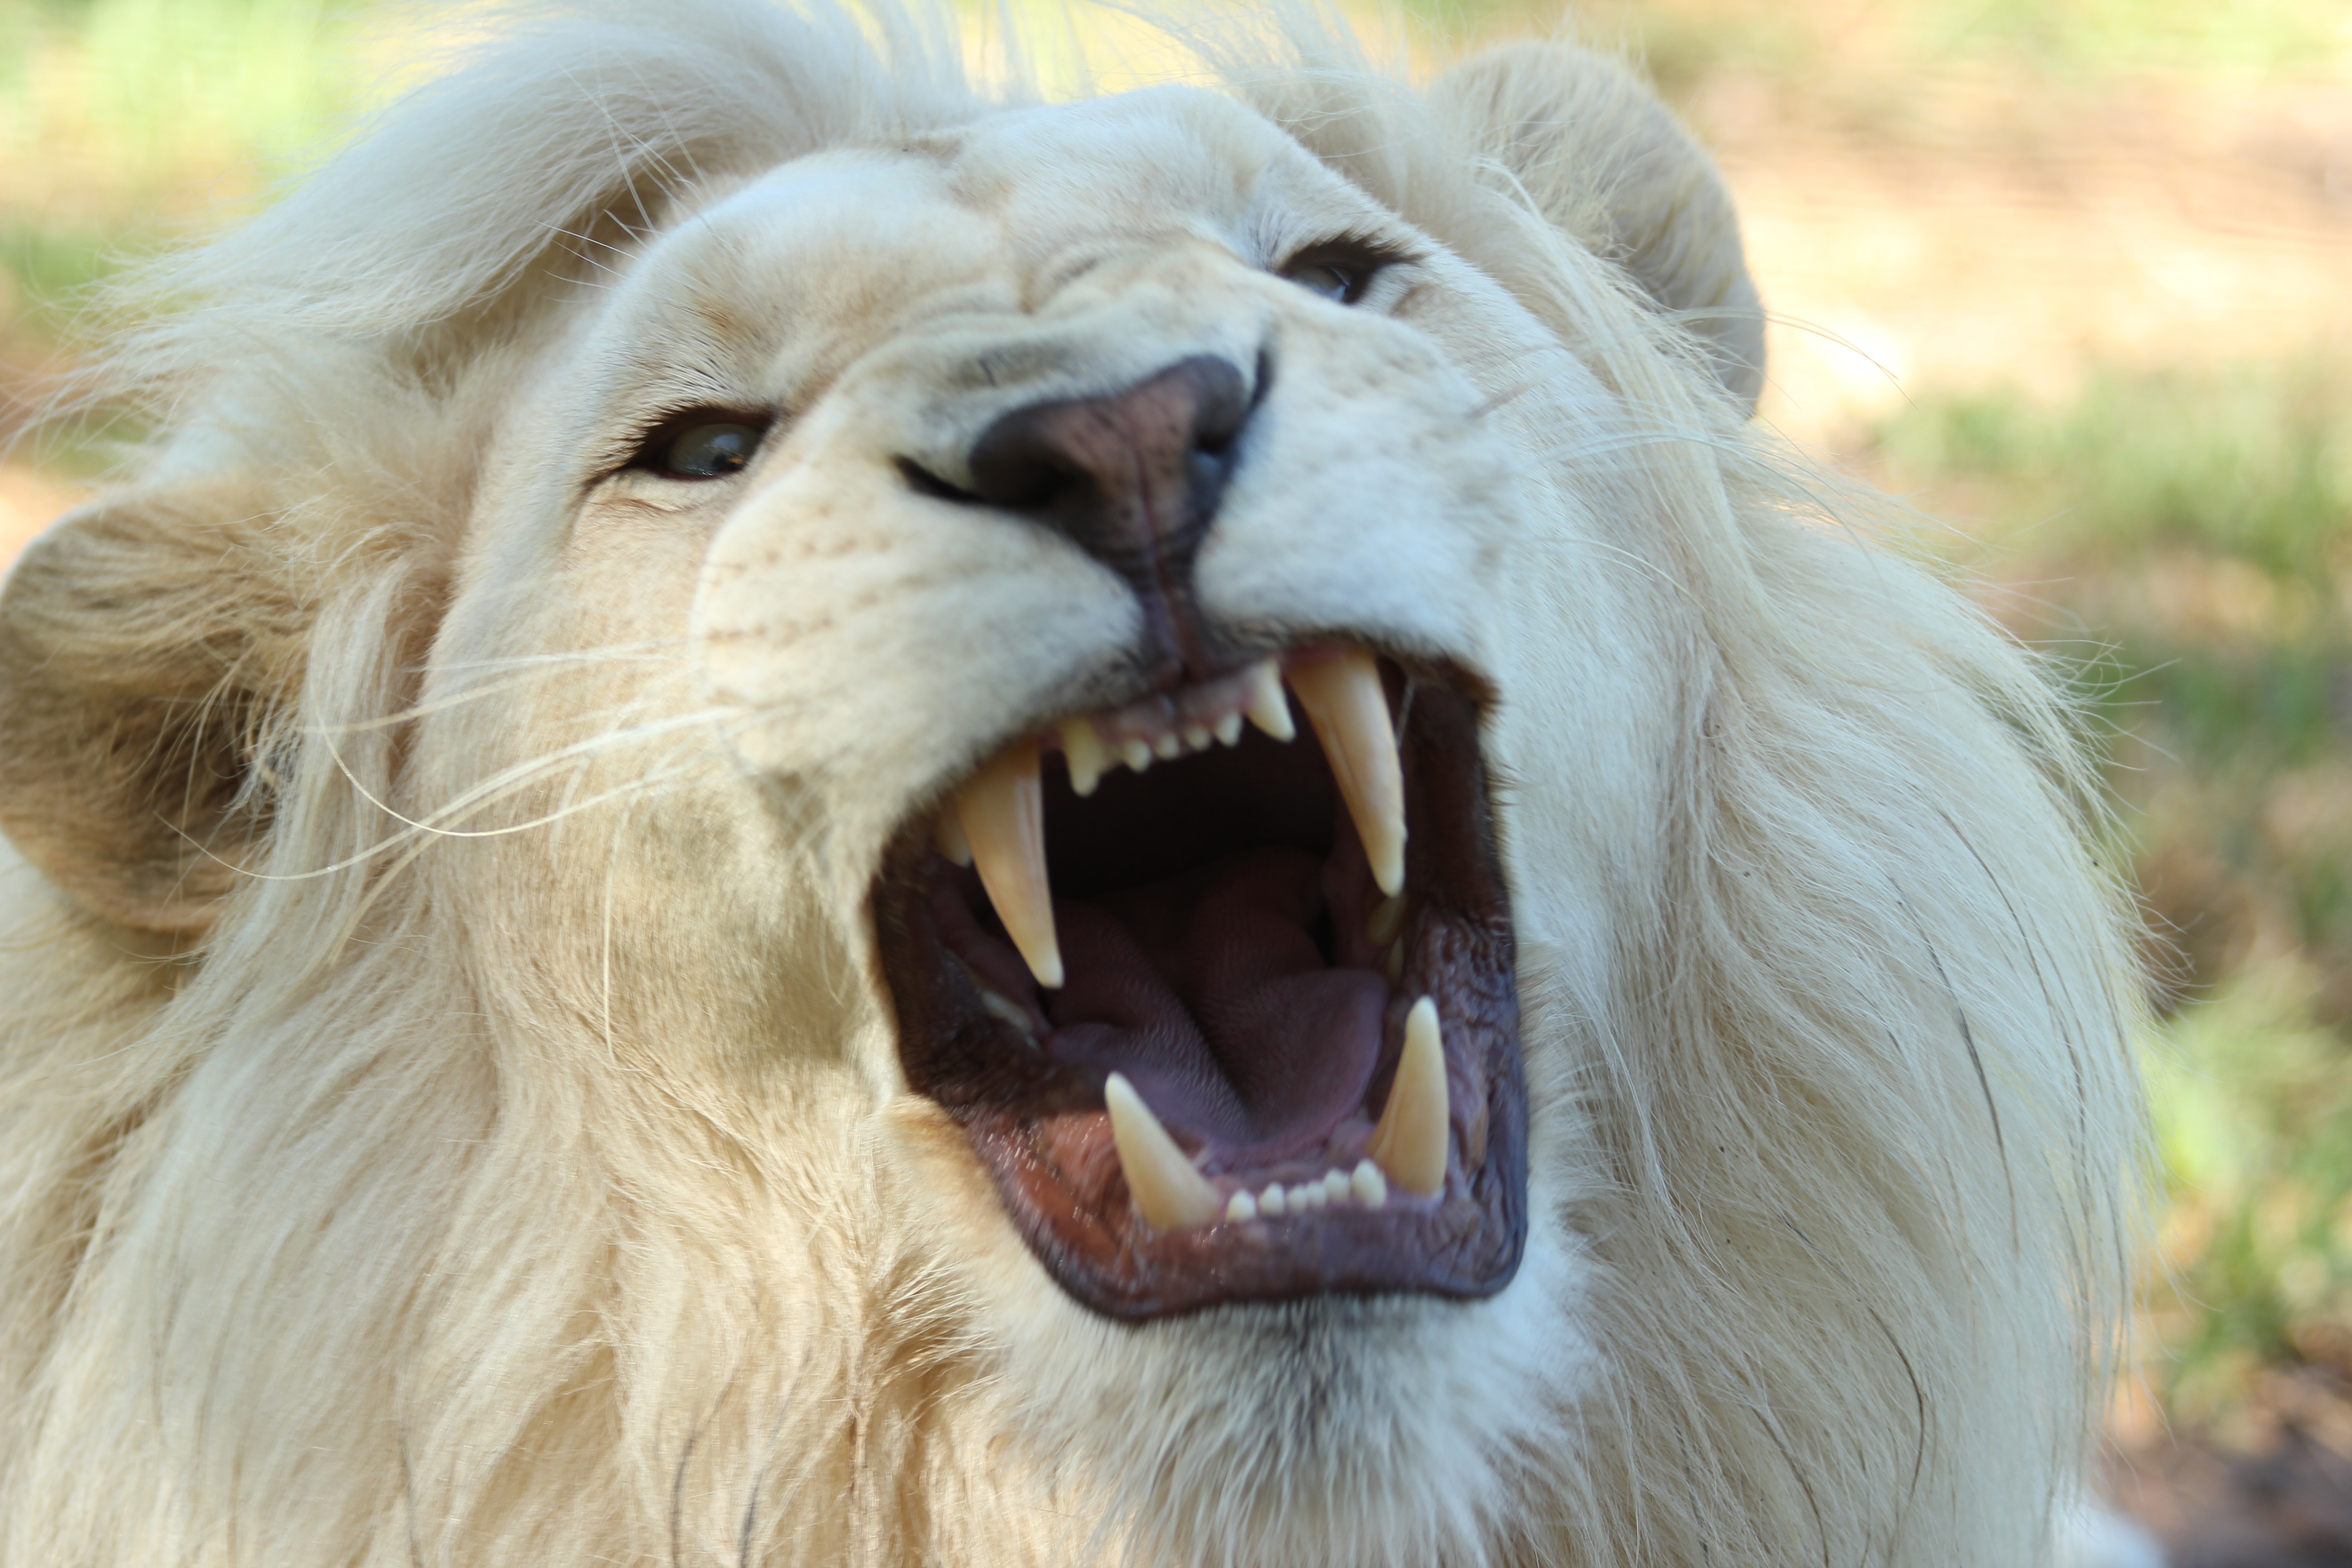 Tốc độ và sức mạnh đã giúp sư tử trở thành vua của muôn loài